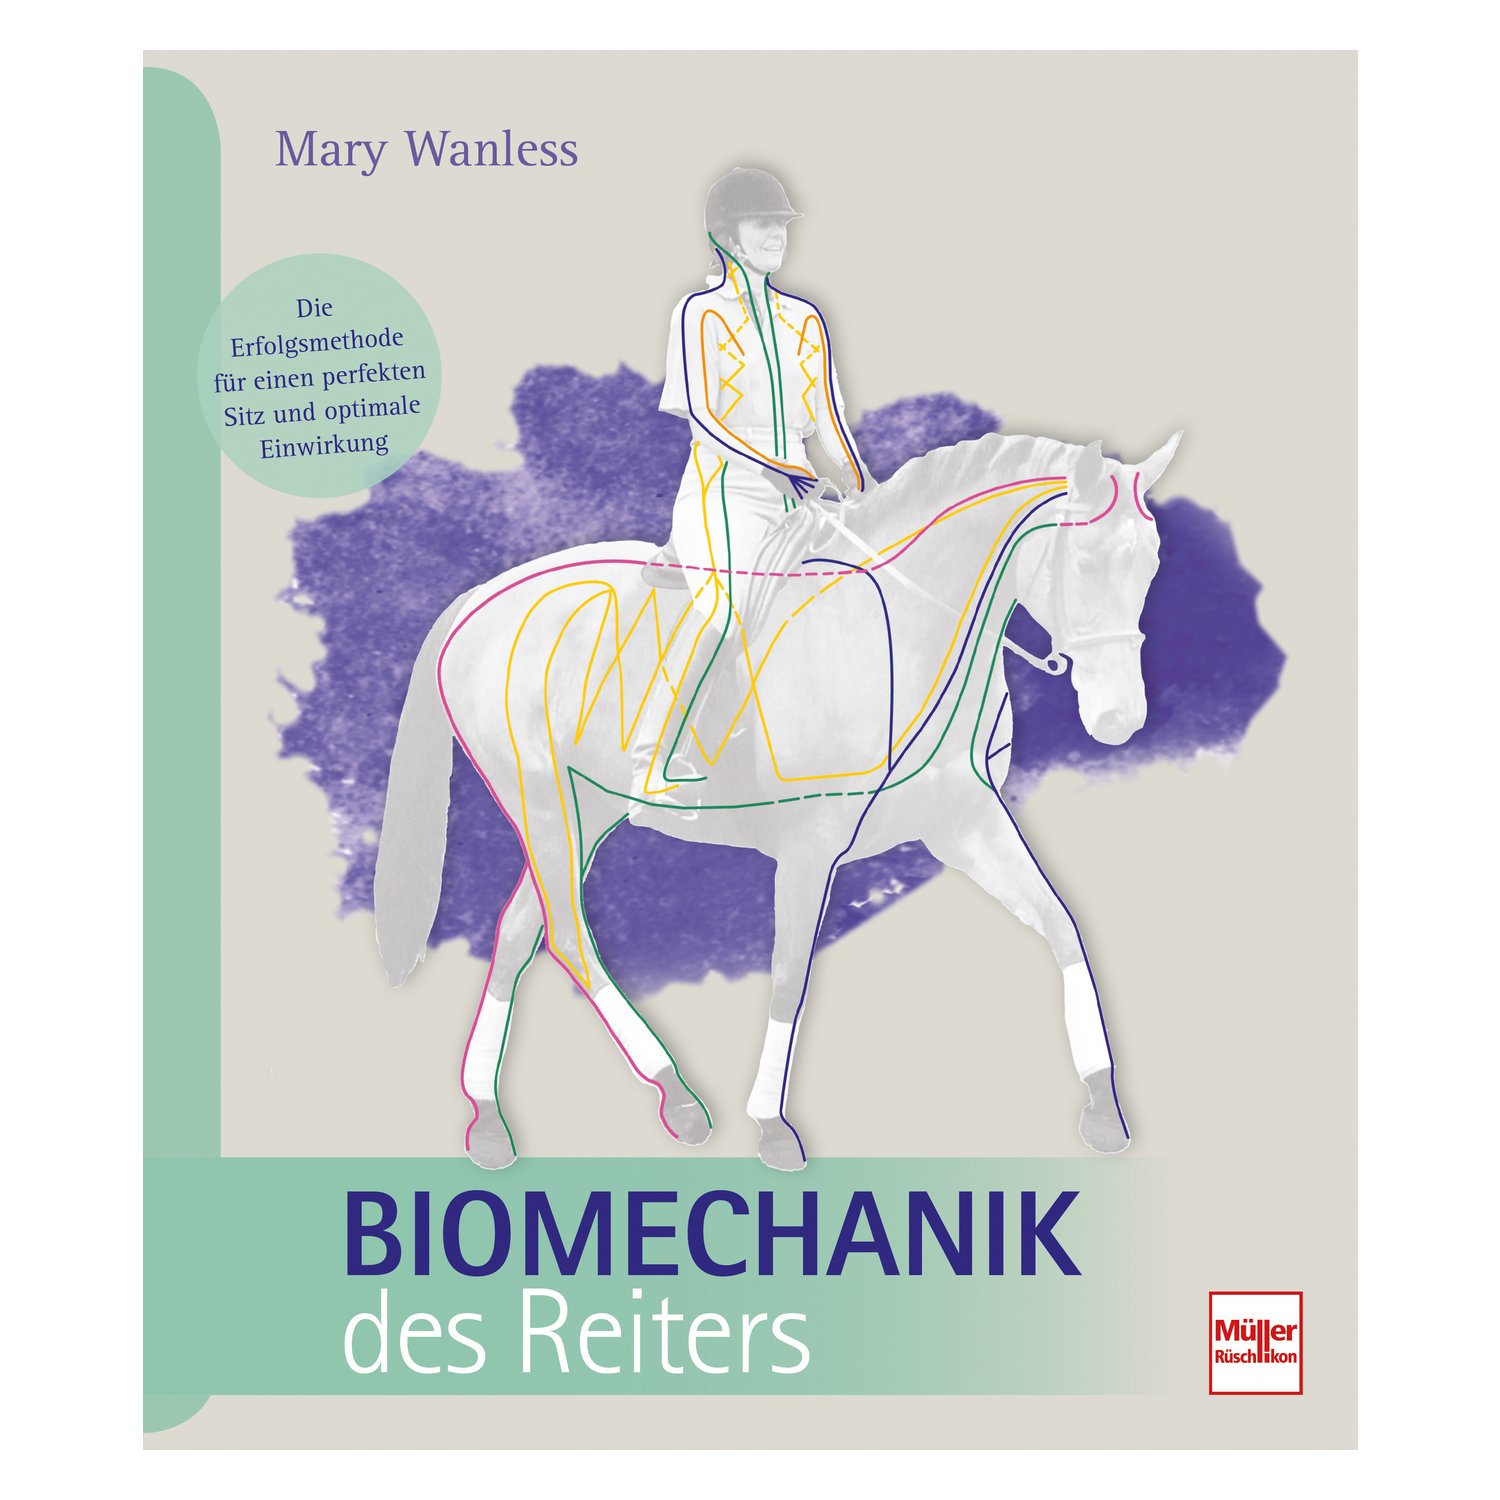 Dehnungshaltung Biomechanik und klassisches Reiten Ratgeber Technik Buch Tipps 